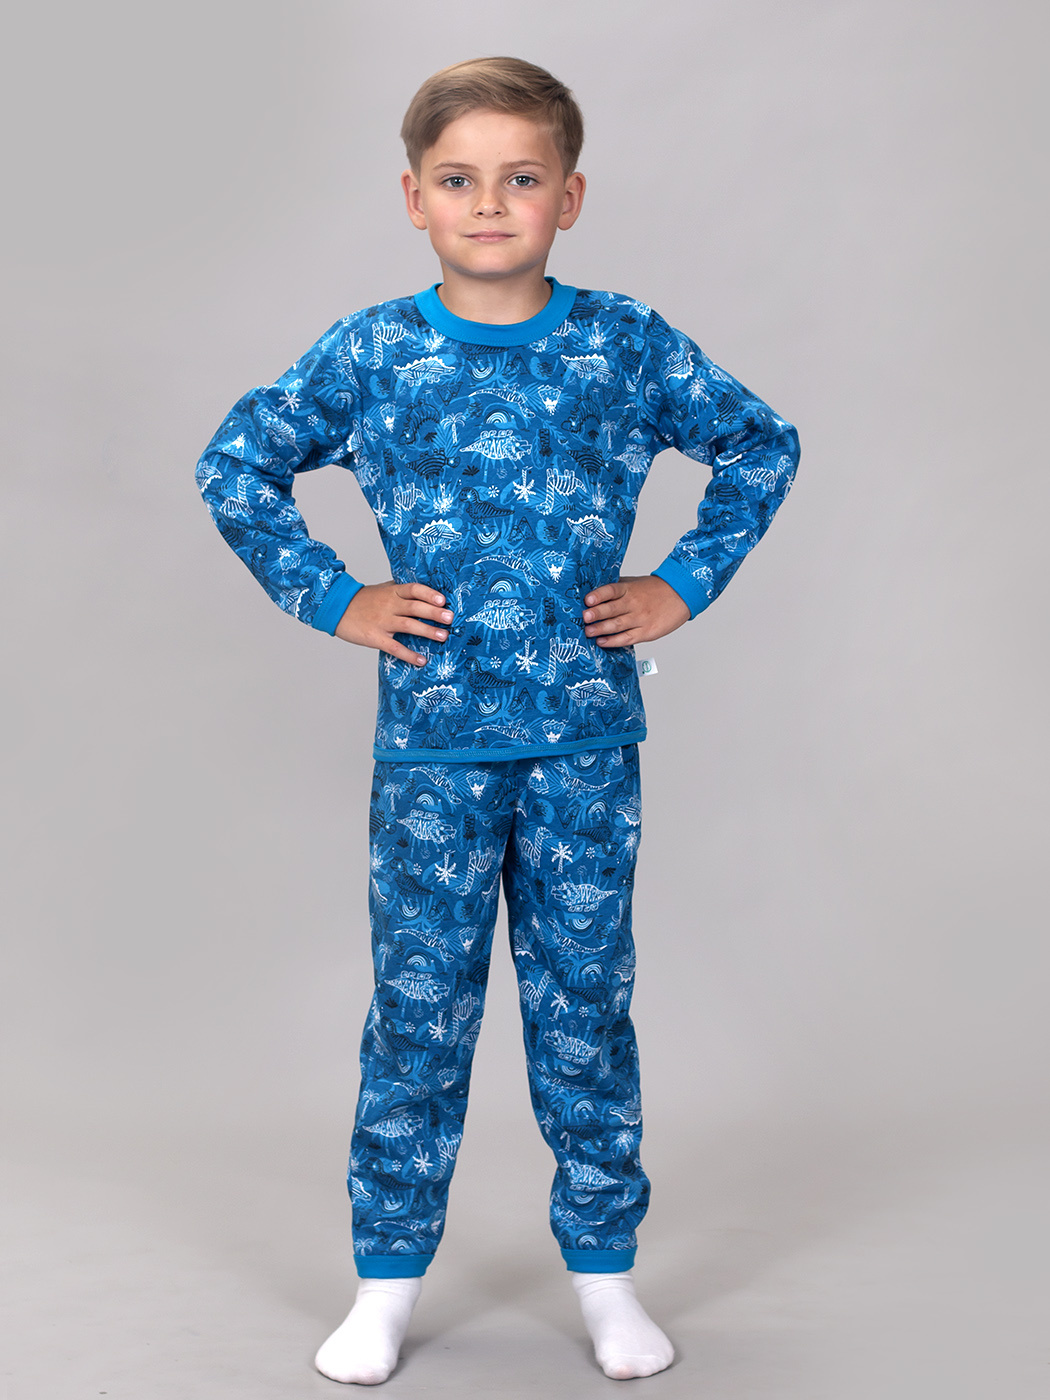 Пижама детская ПЖТ-209 птеродак/голубой - купить в Санкт-Петербурге на  https://www.zaitsew.ru/